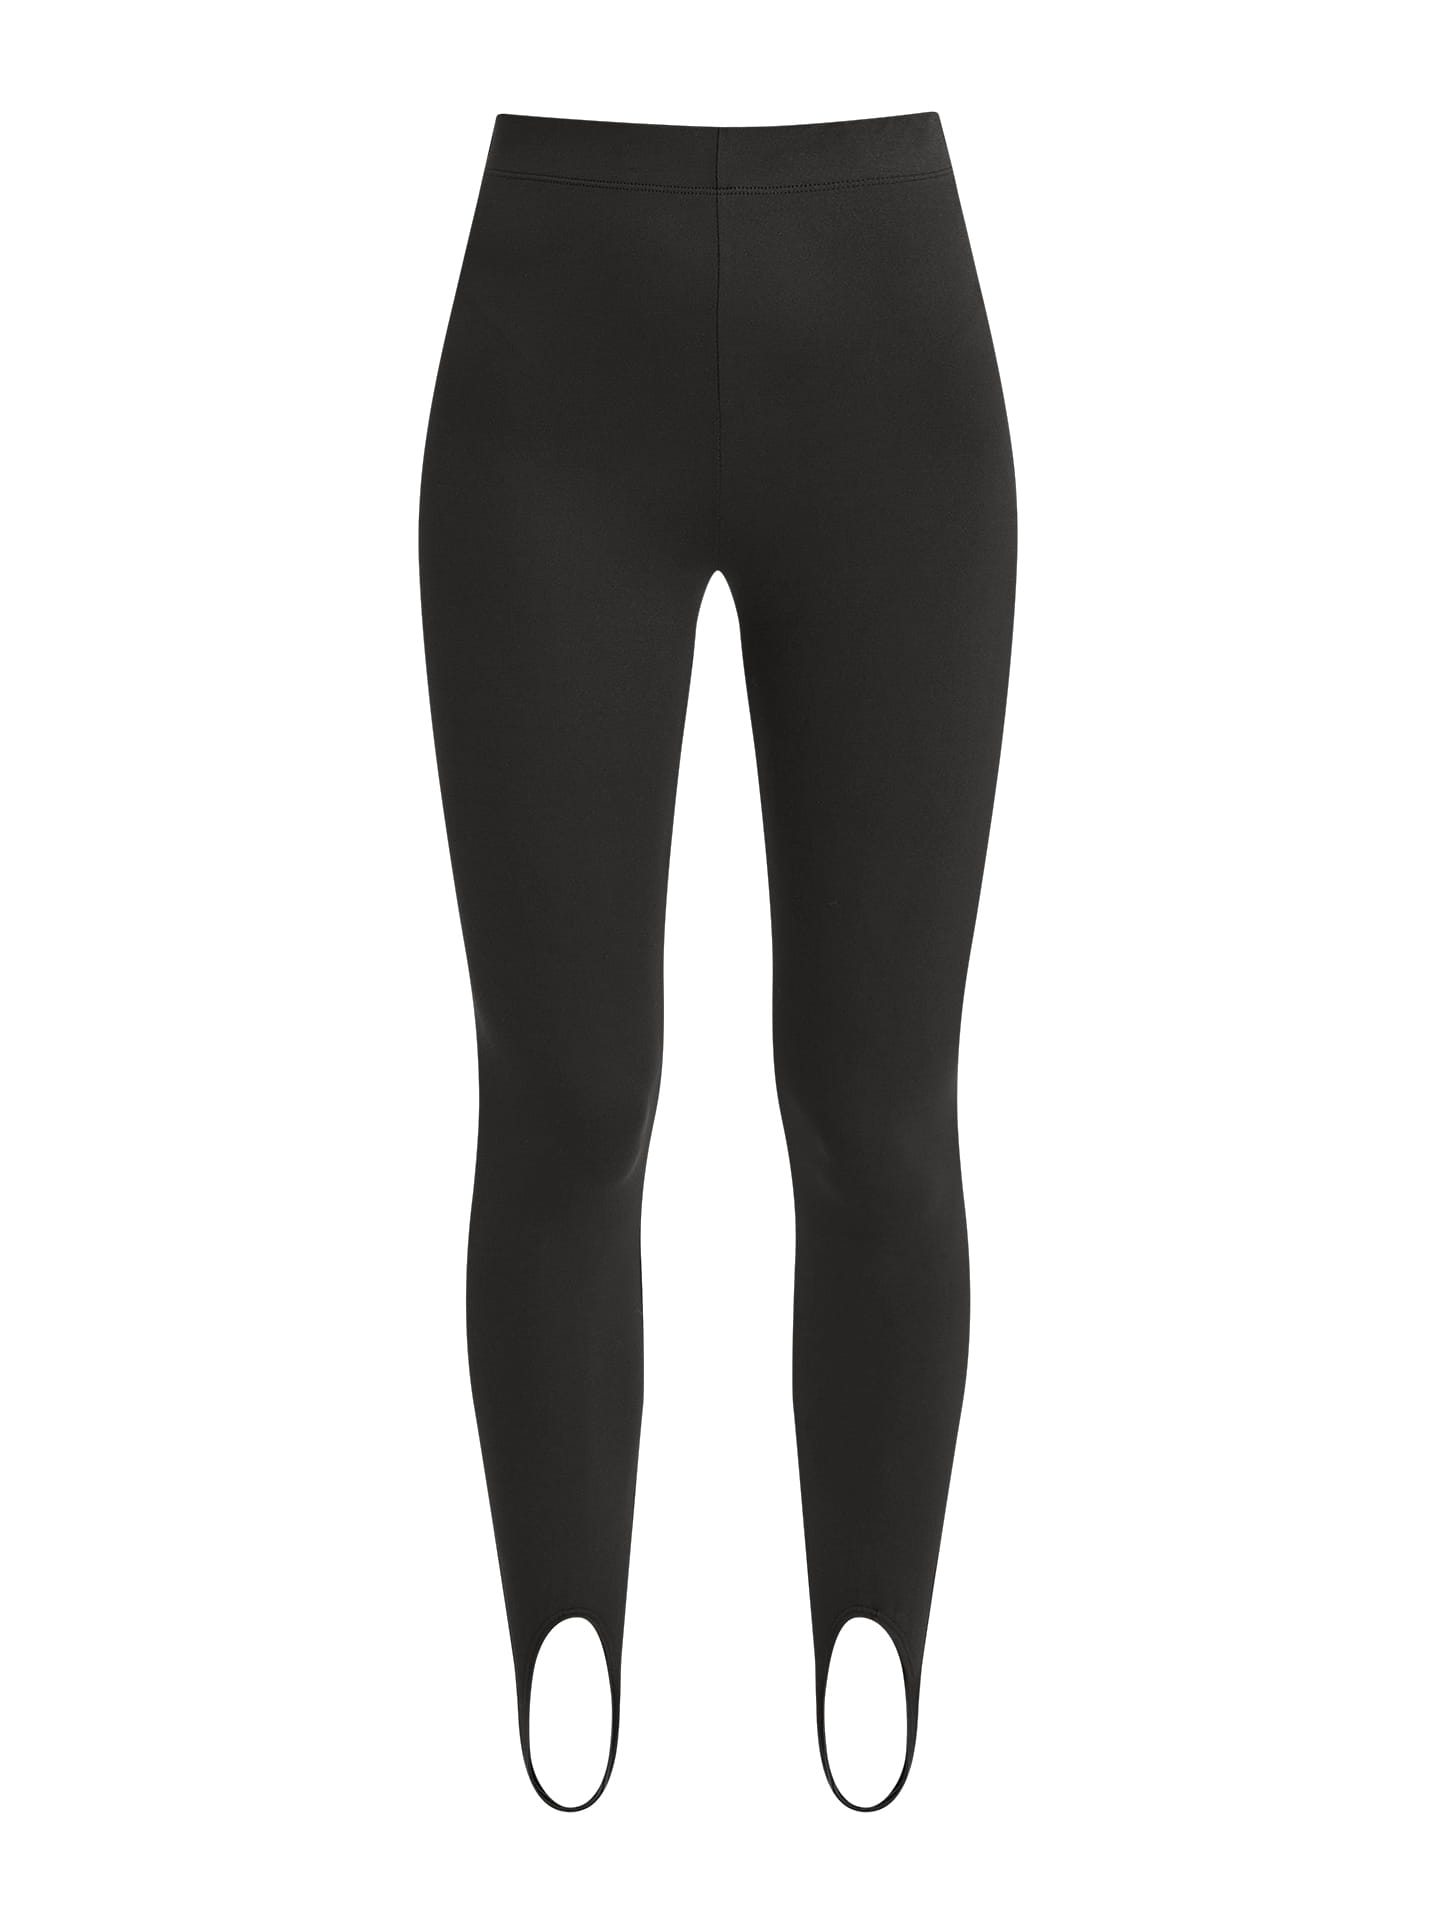 Fuseau leggings in black, 4.99€